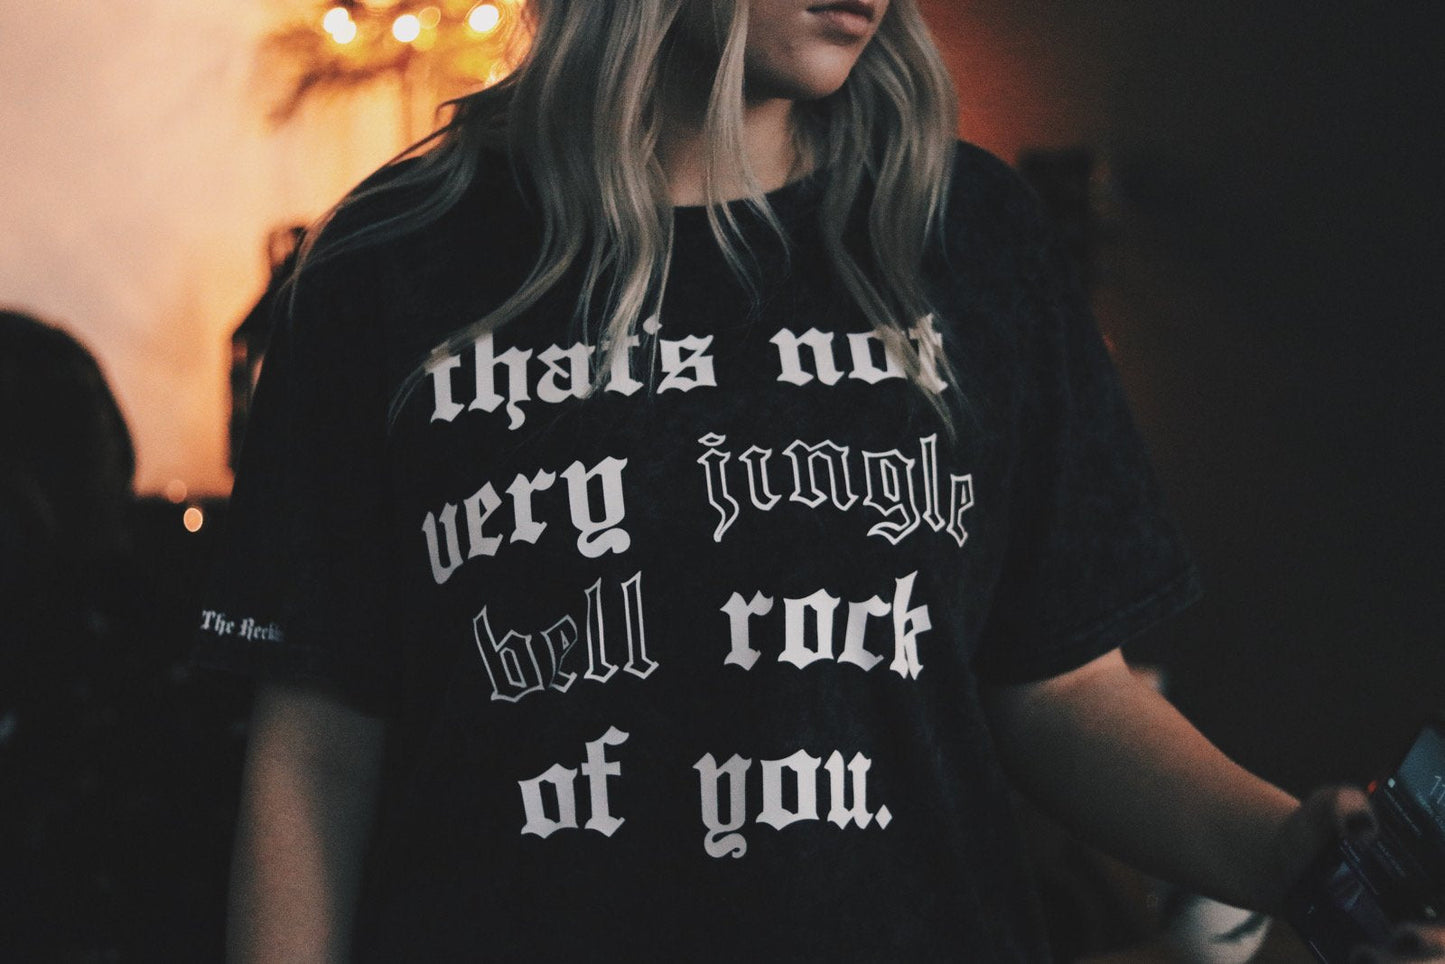 That's Not Very Jingle Bell Rock - Sweatshirt